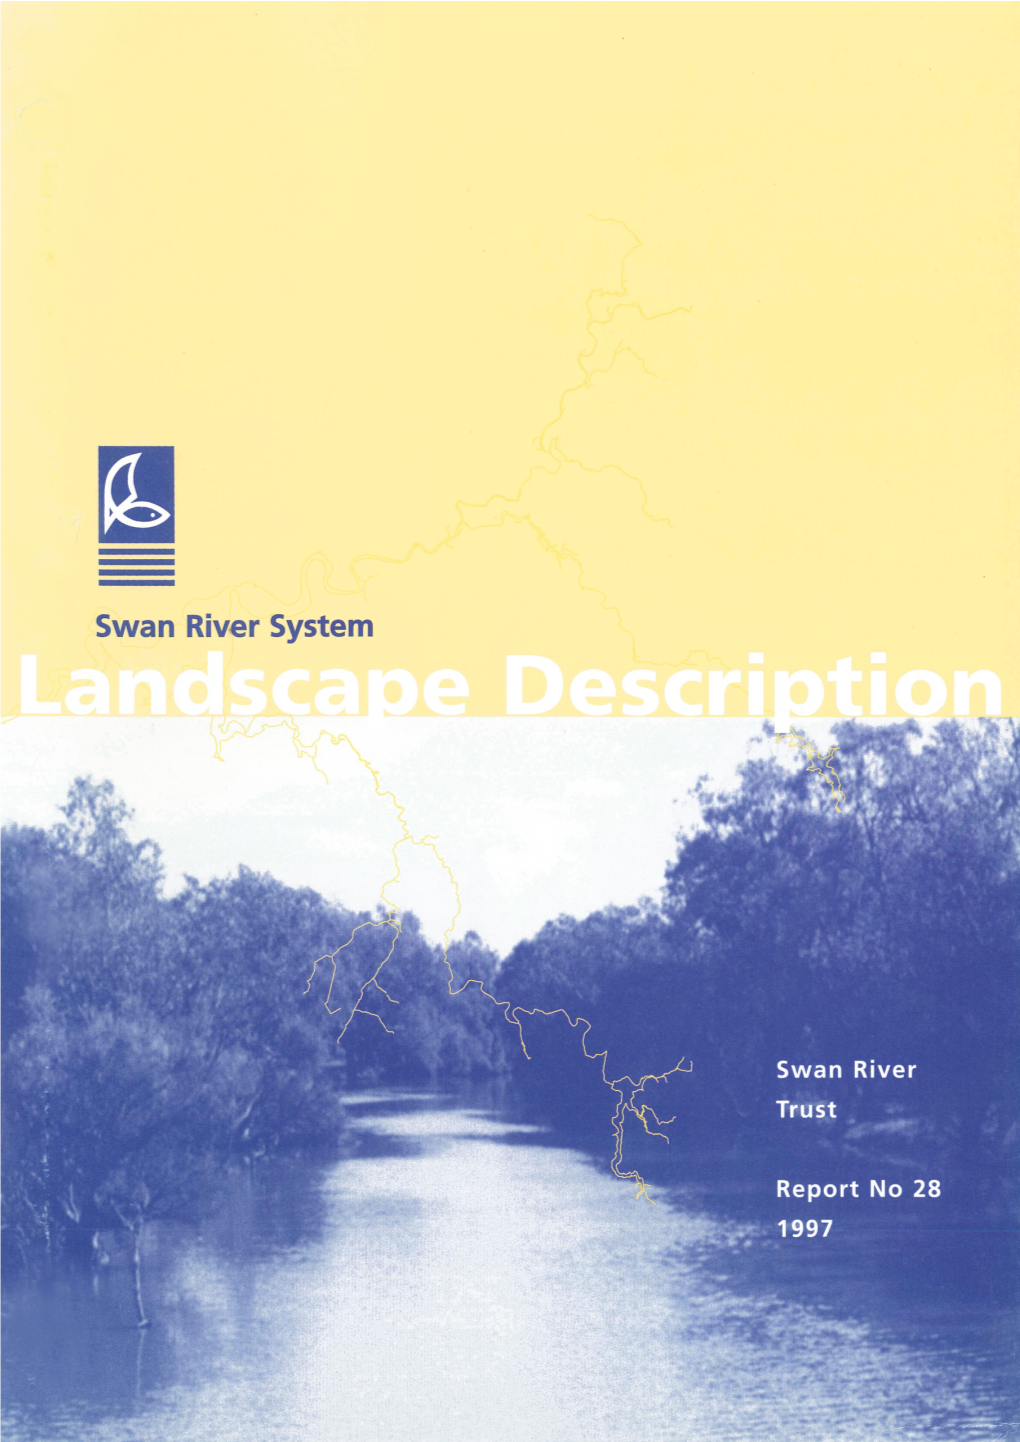 Landscape Description Introduction1